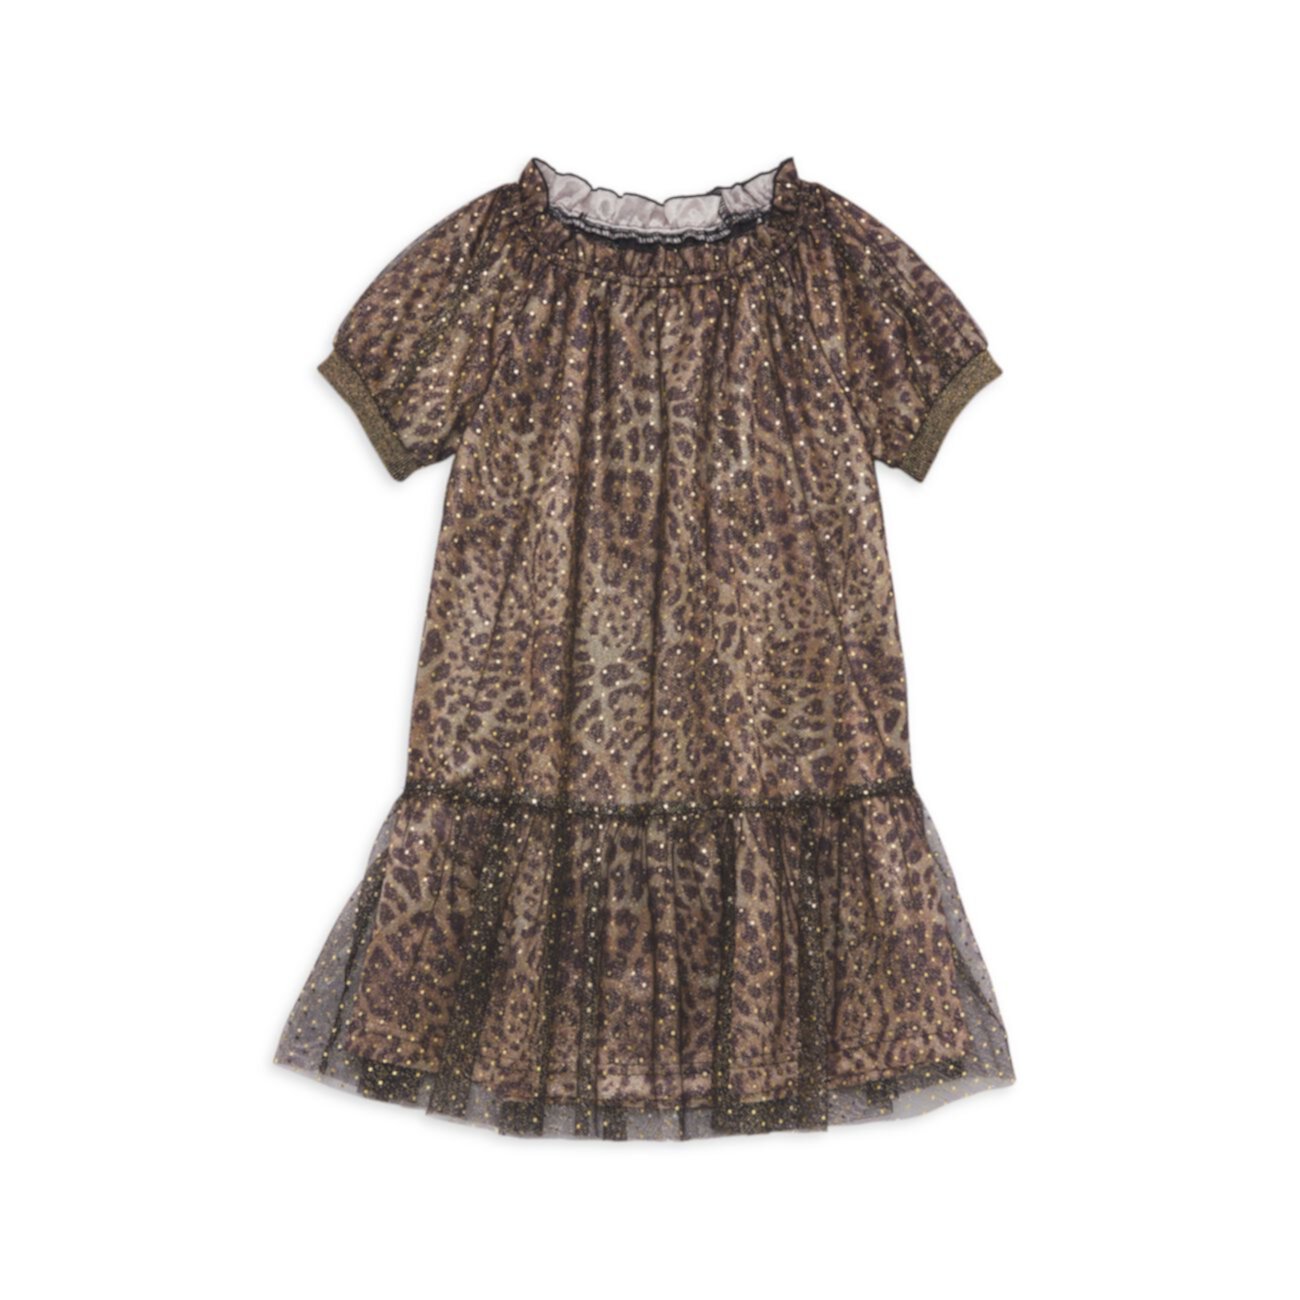 Блестящее платье с принтом гепарда для маленькой девочки Imoga